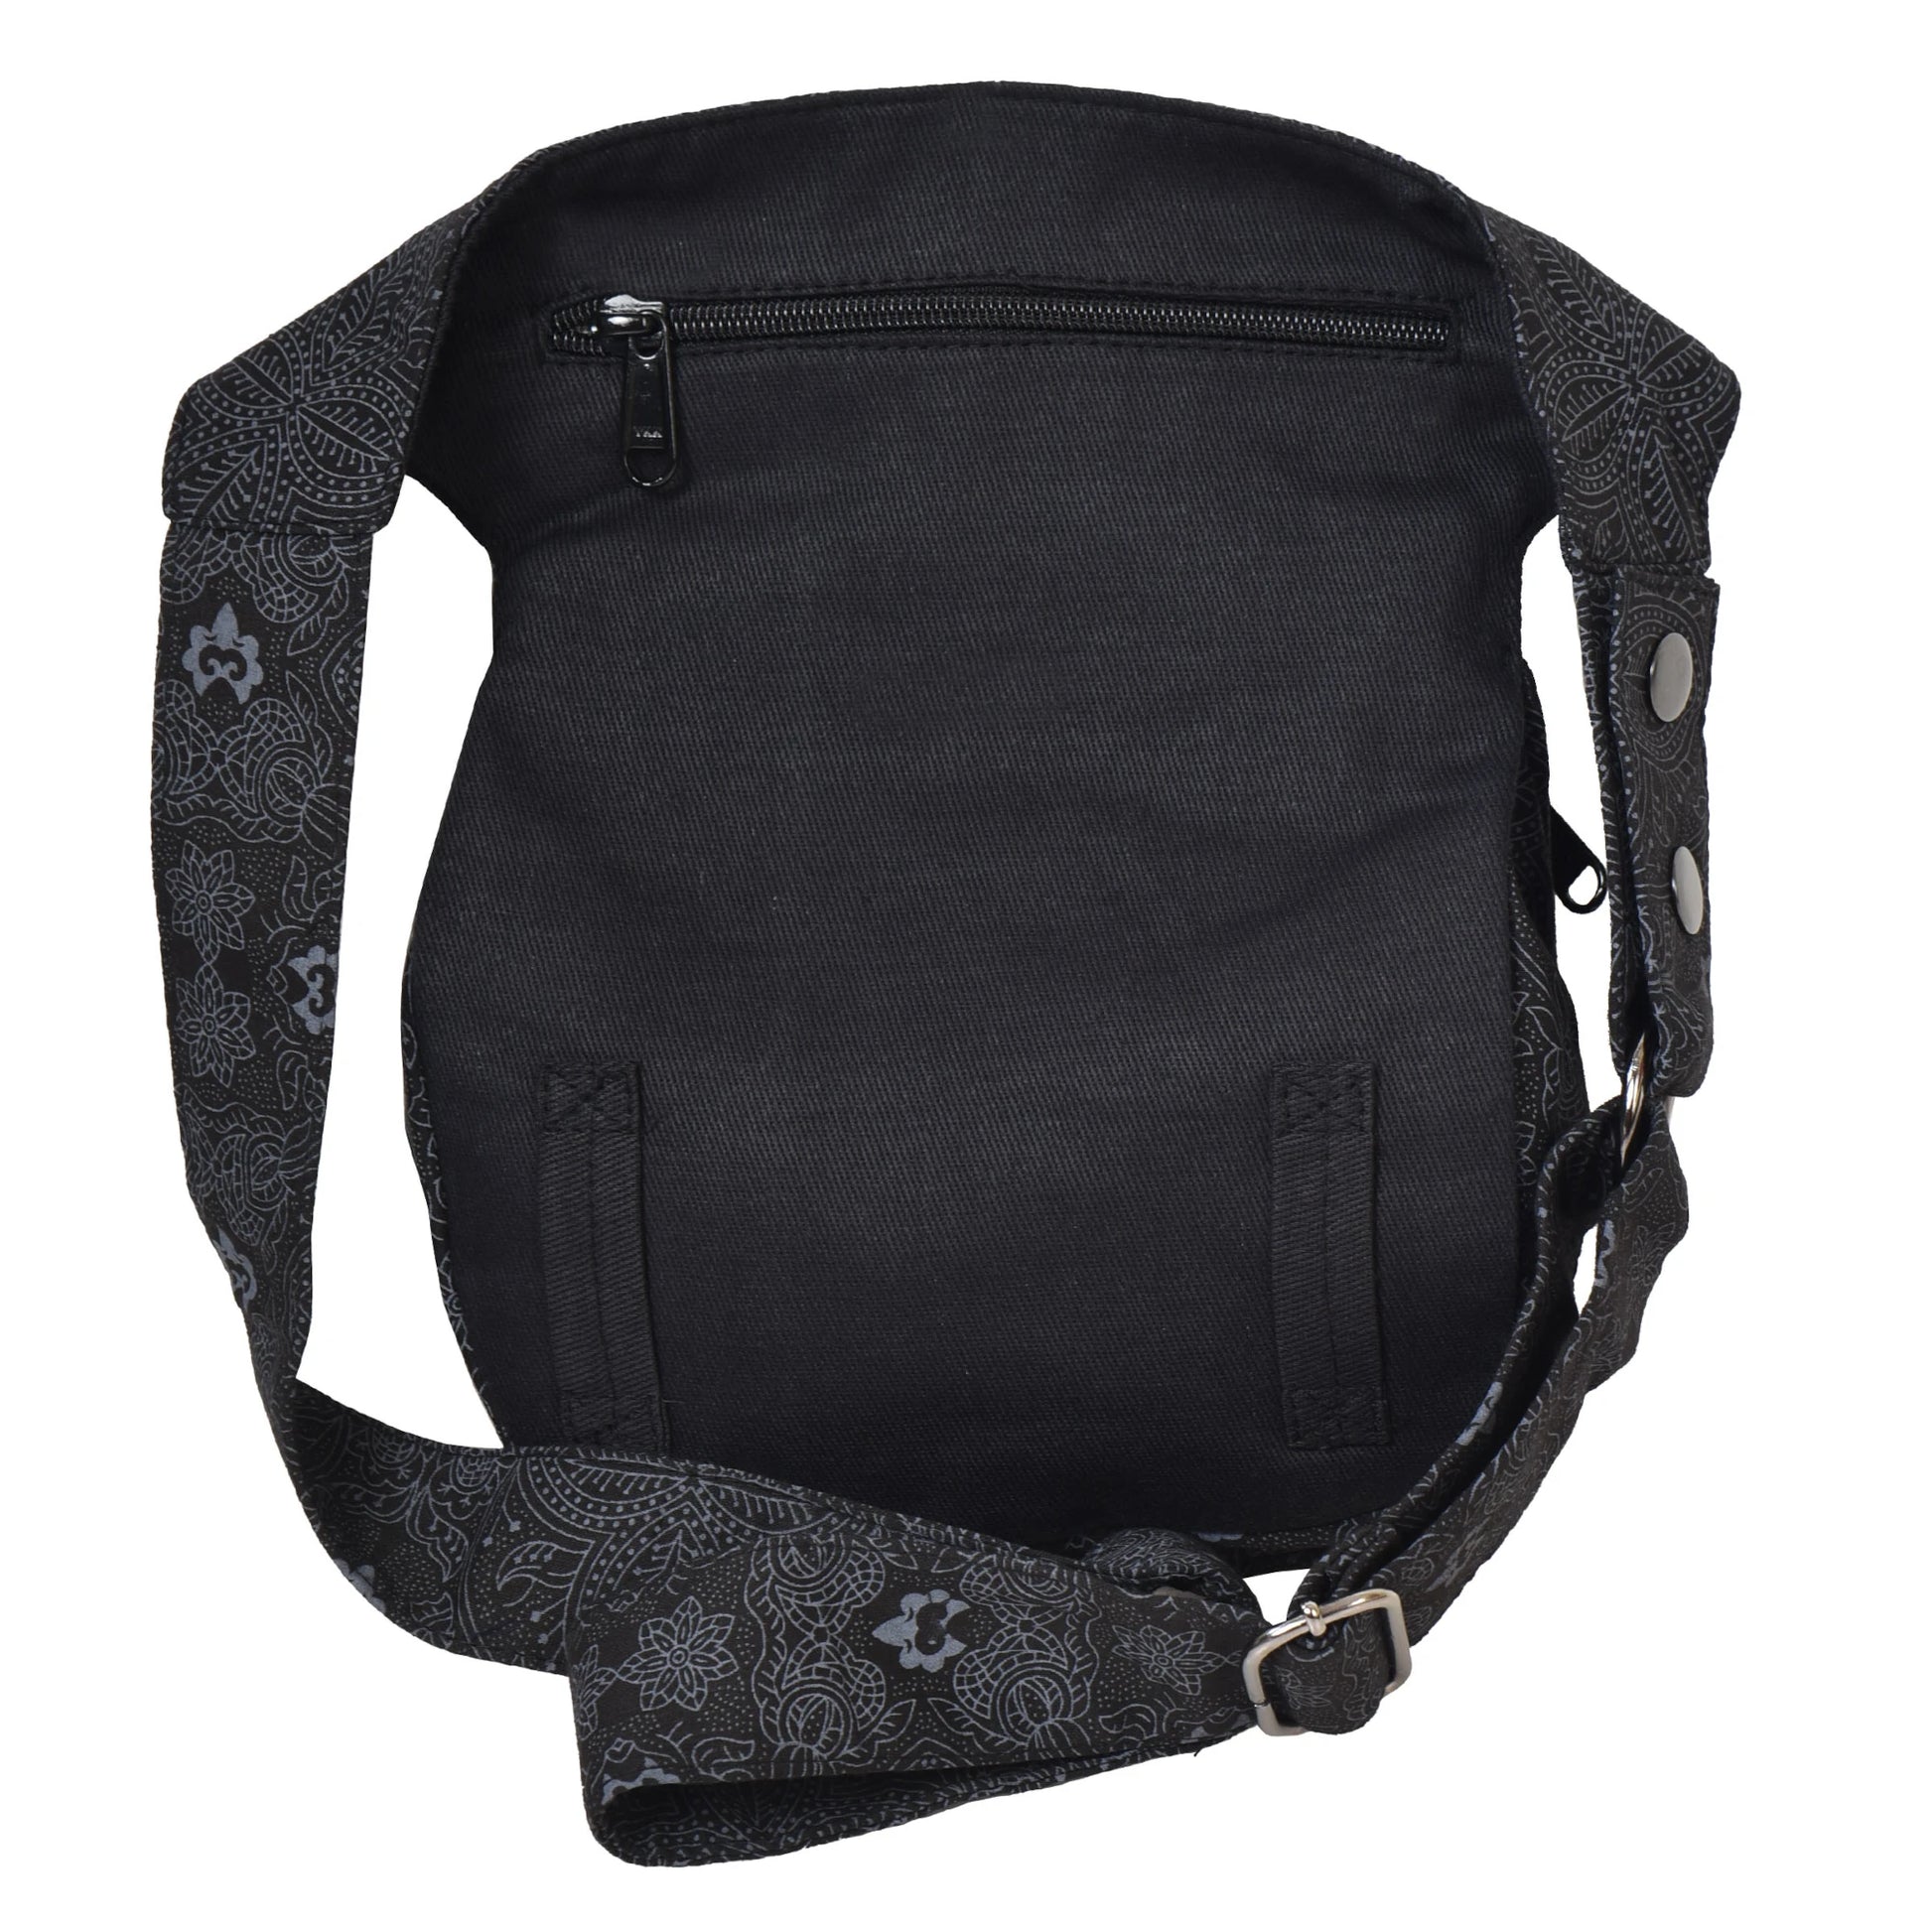 Gürteltasche Schwarz mit Palmen Motiv. Diese Tasche verfügt über ein hinteres Reißverschlussfach und zwei Gürtelschlaufen zur Befestigung eines Beingurtes.